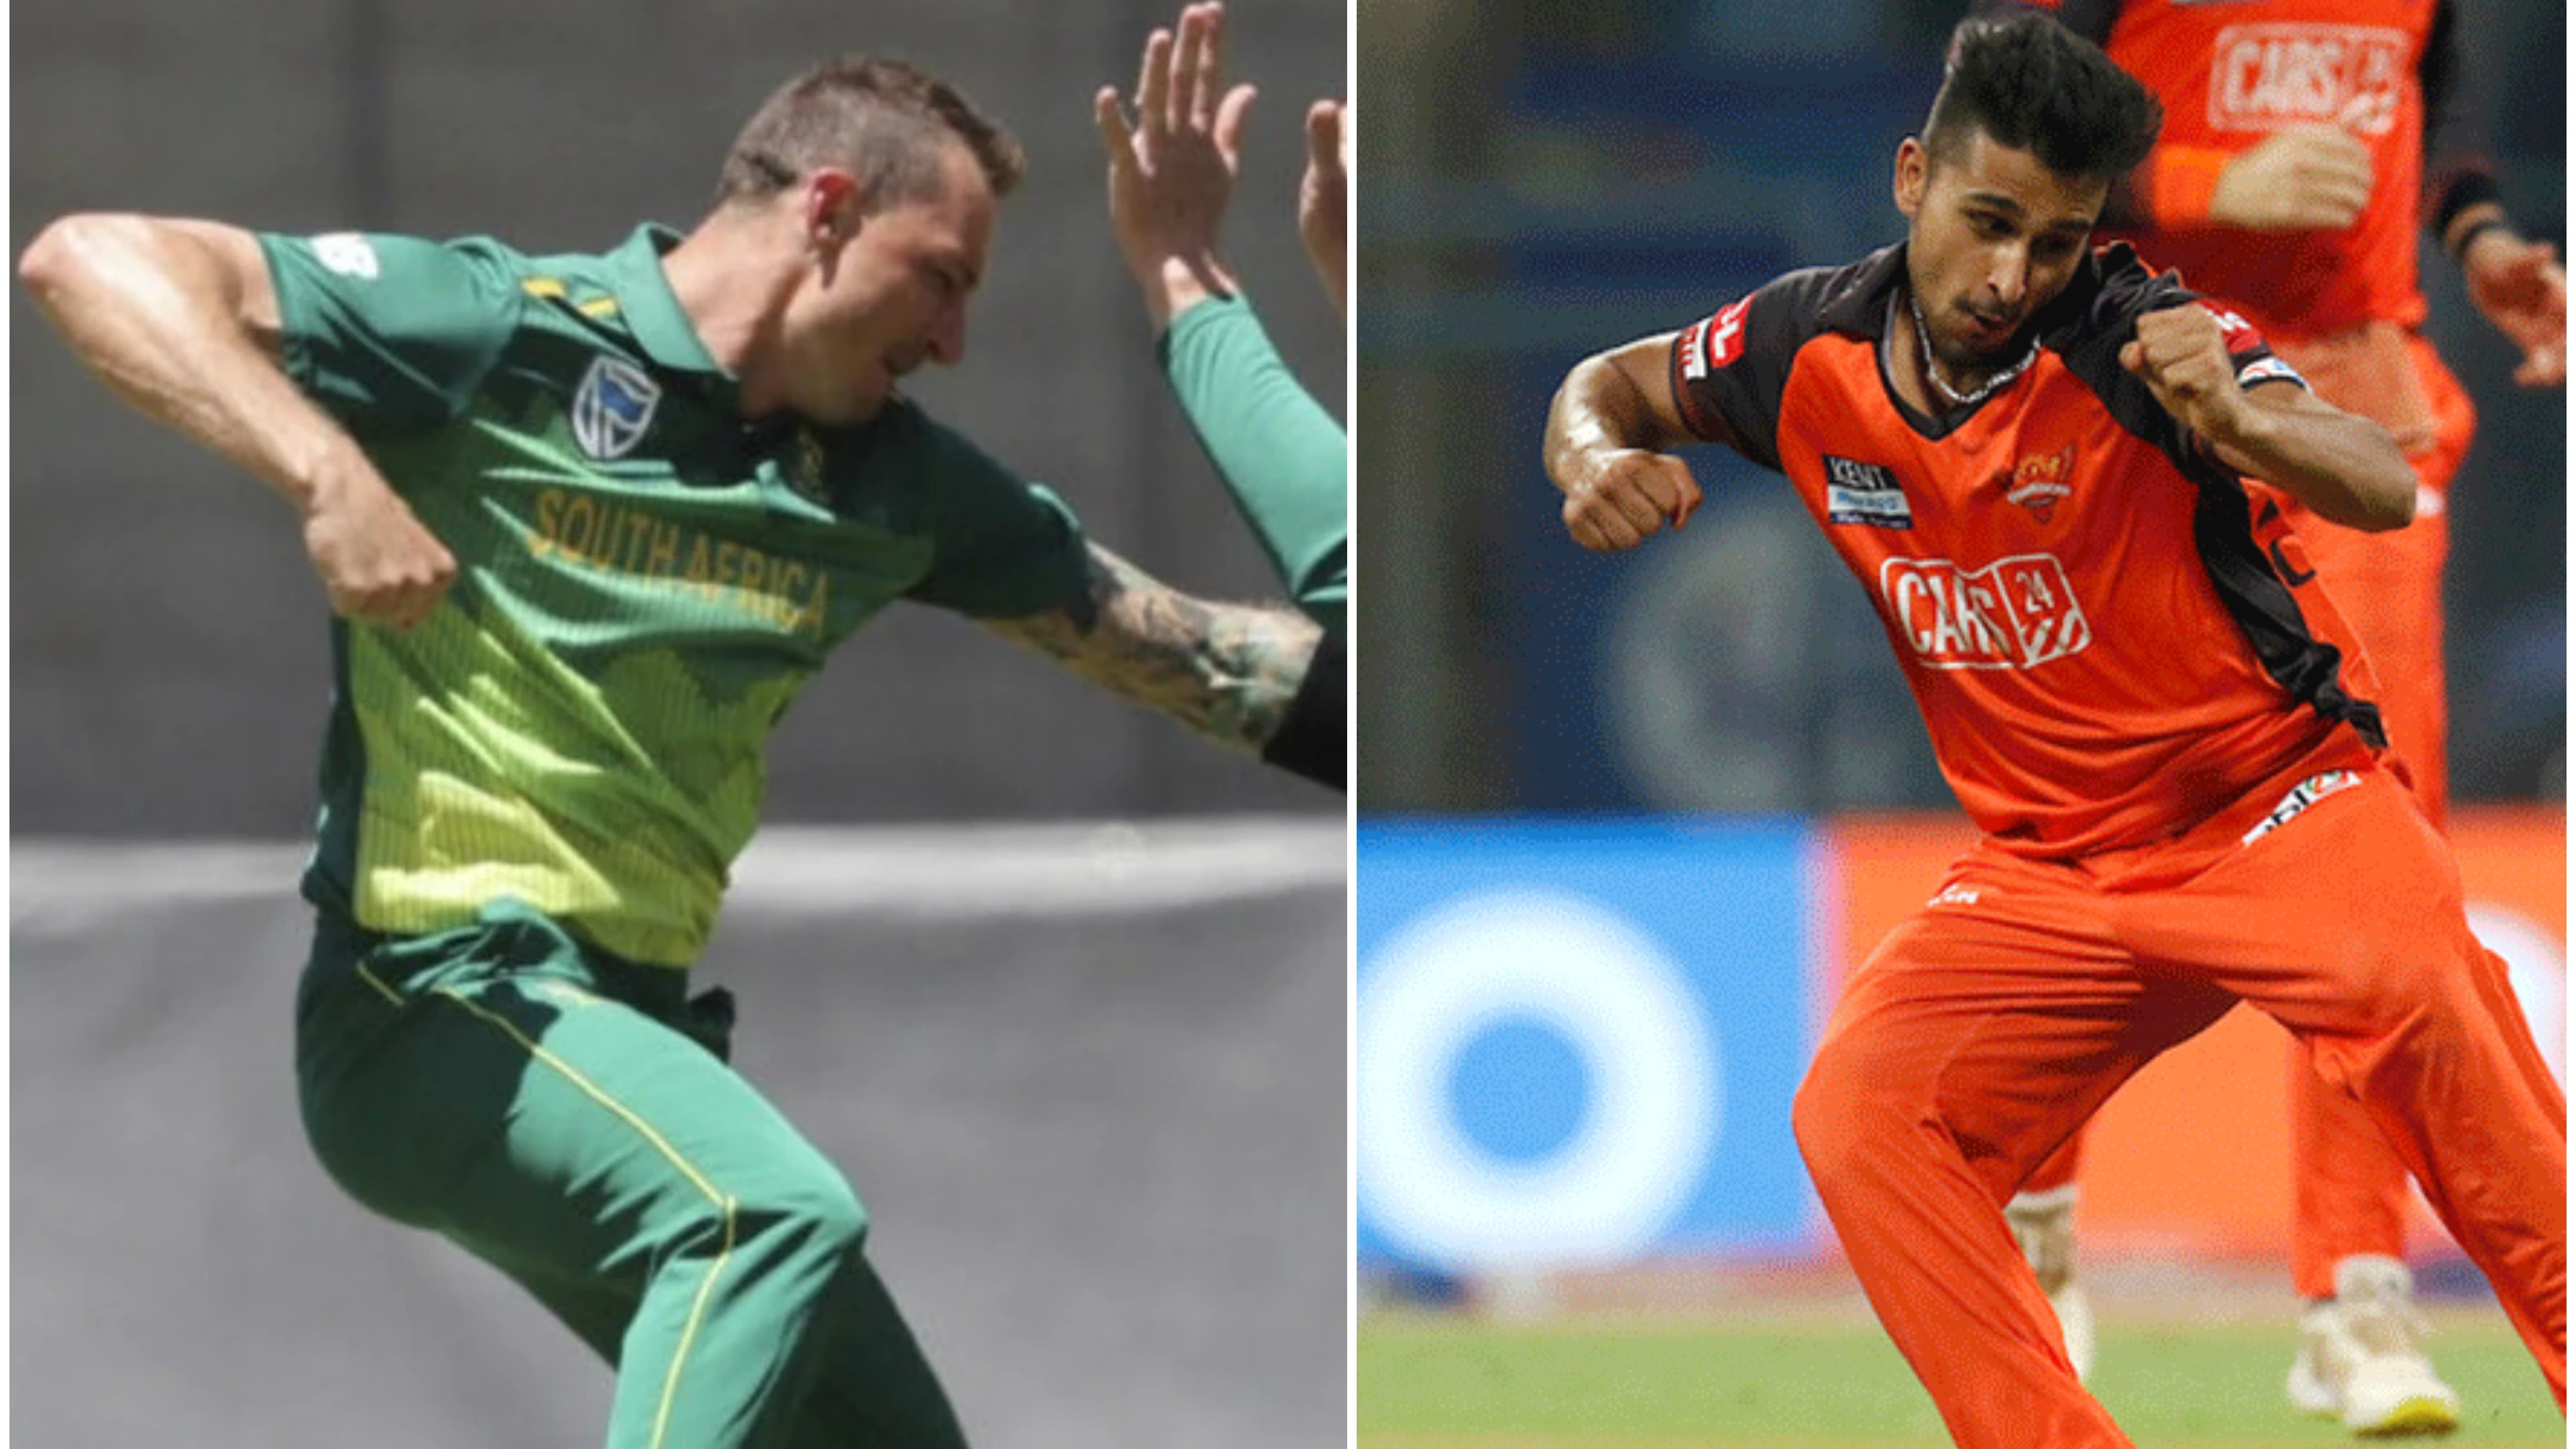 IPL 2022: WATCH – Umran Malik reveals he picked up fist-pumping celebration from Dale Steyn in SRH nets